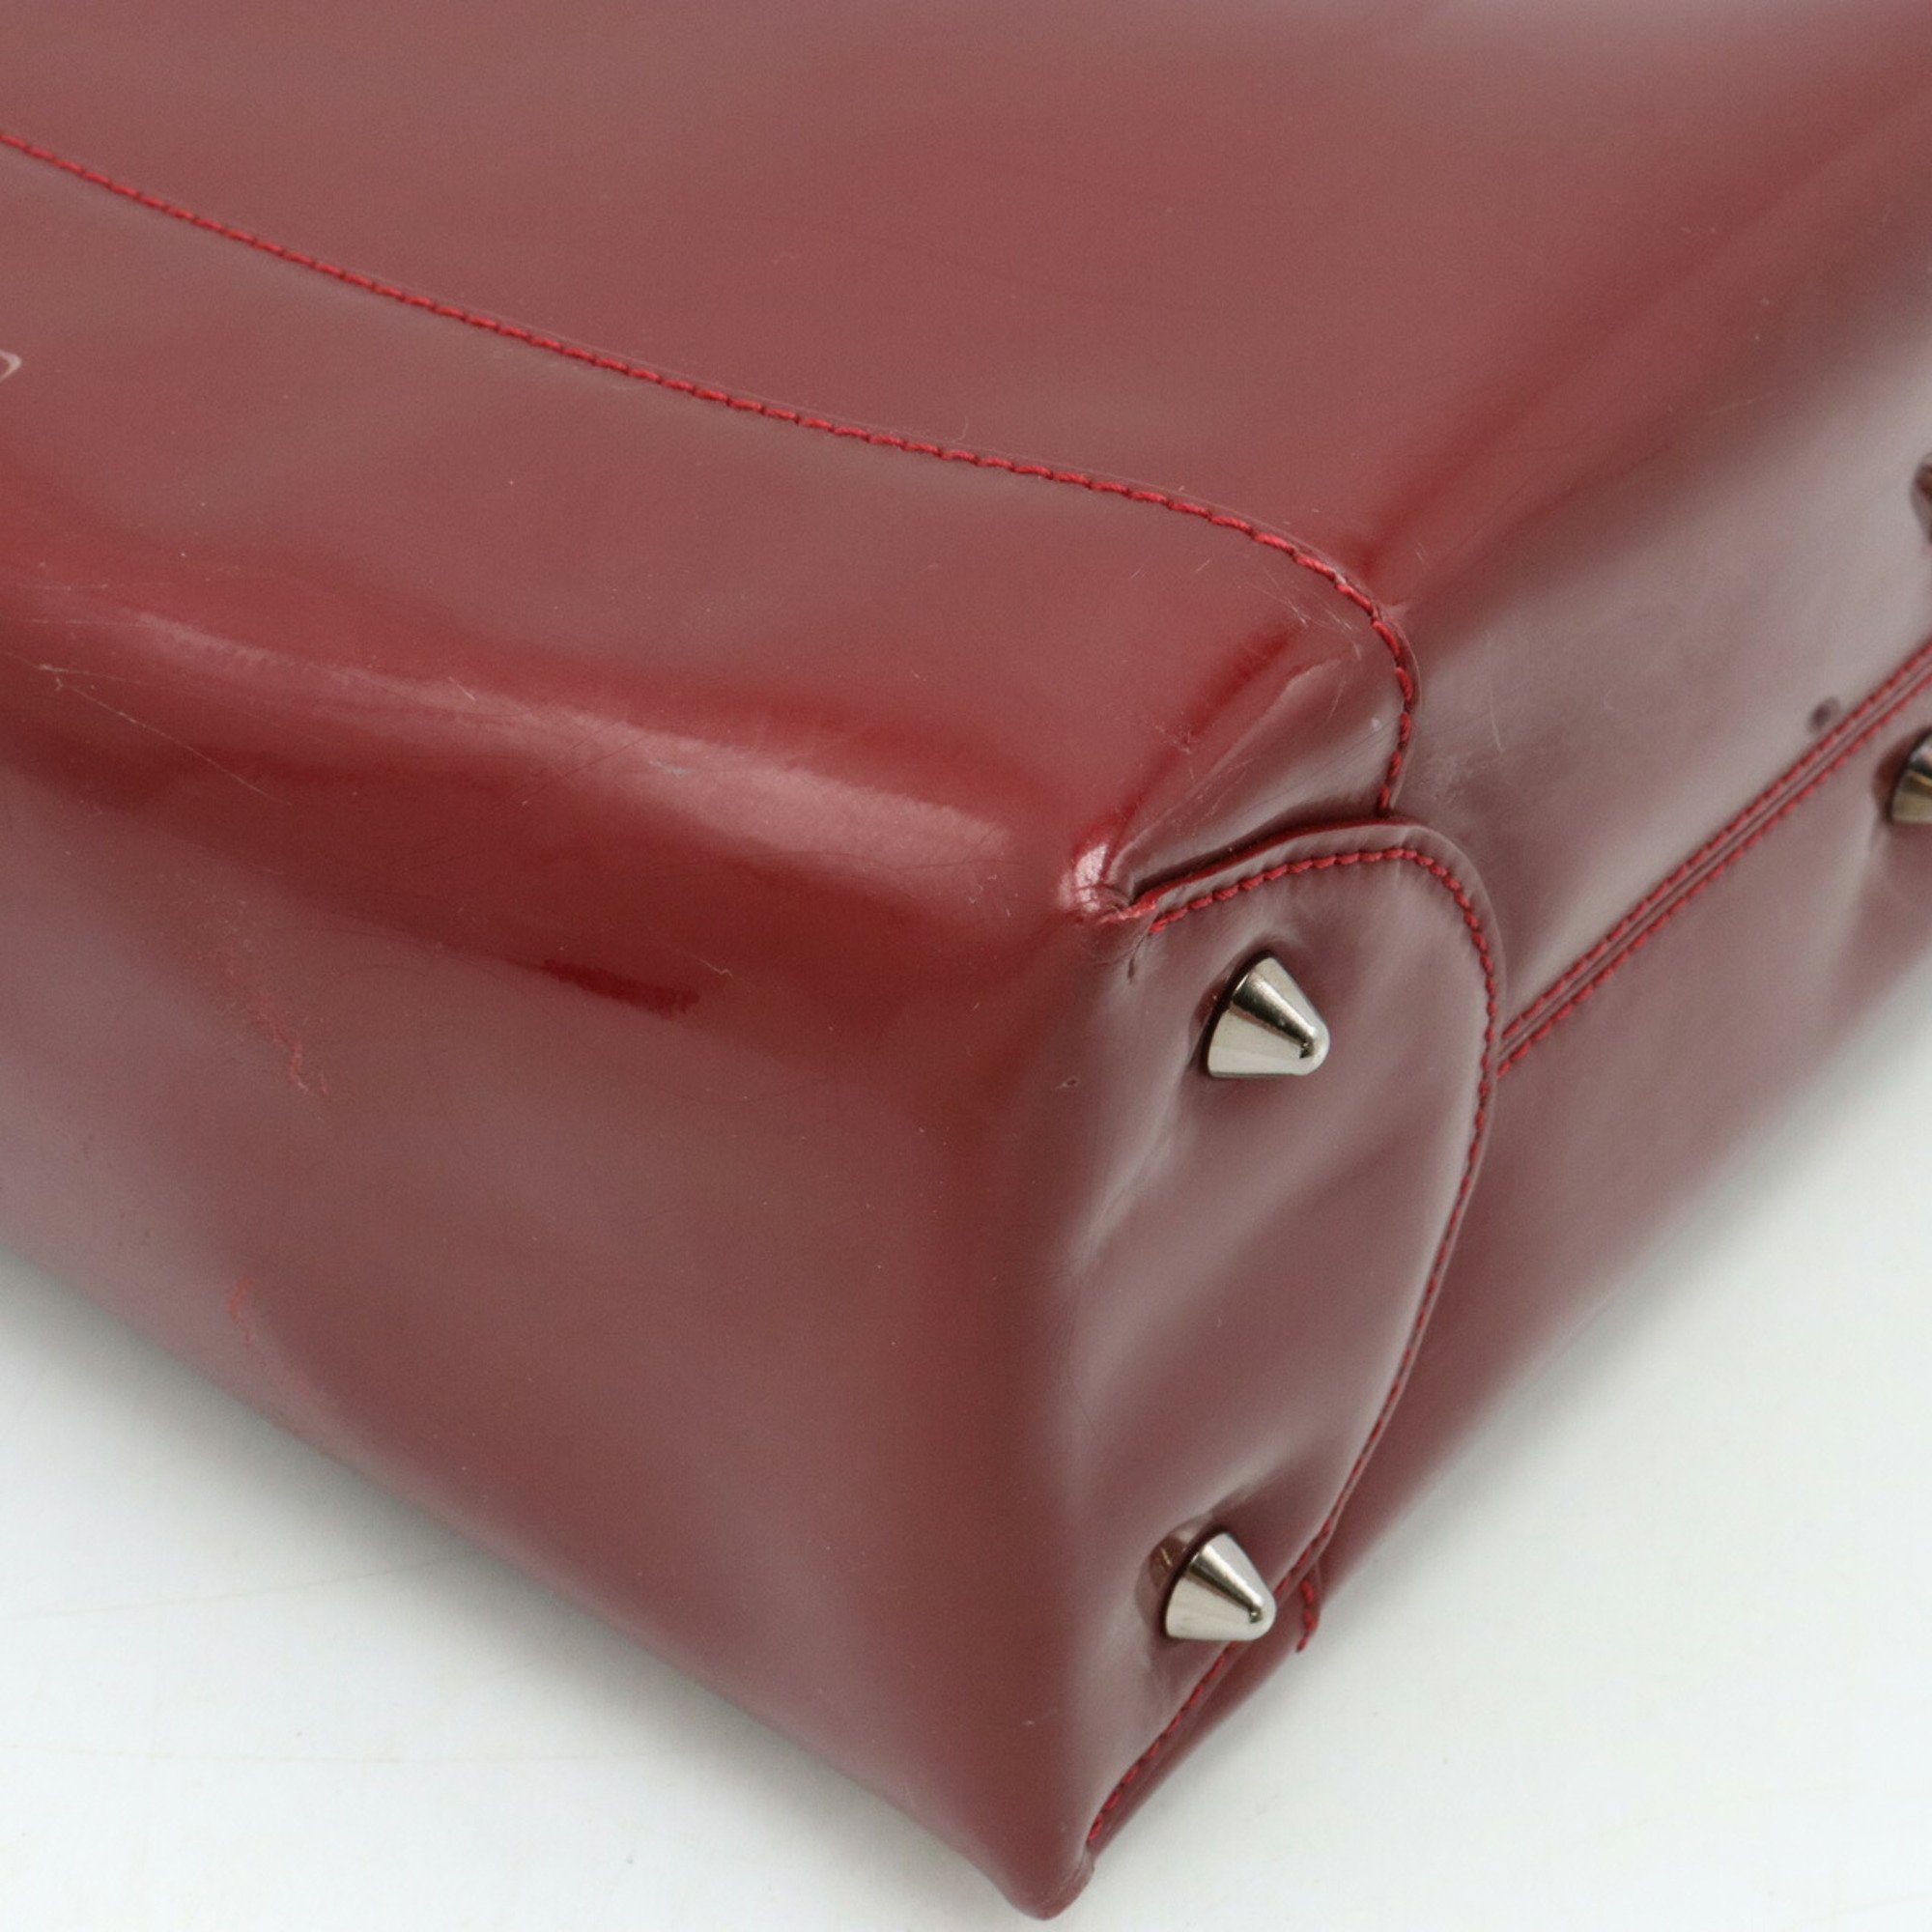 Christian Dior Marispearl handbag shoulder bag patent leather red